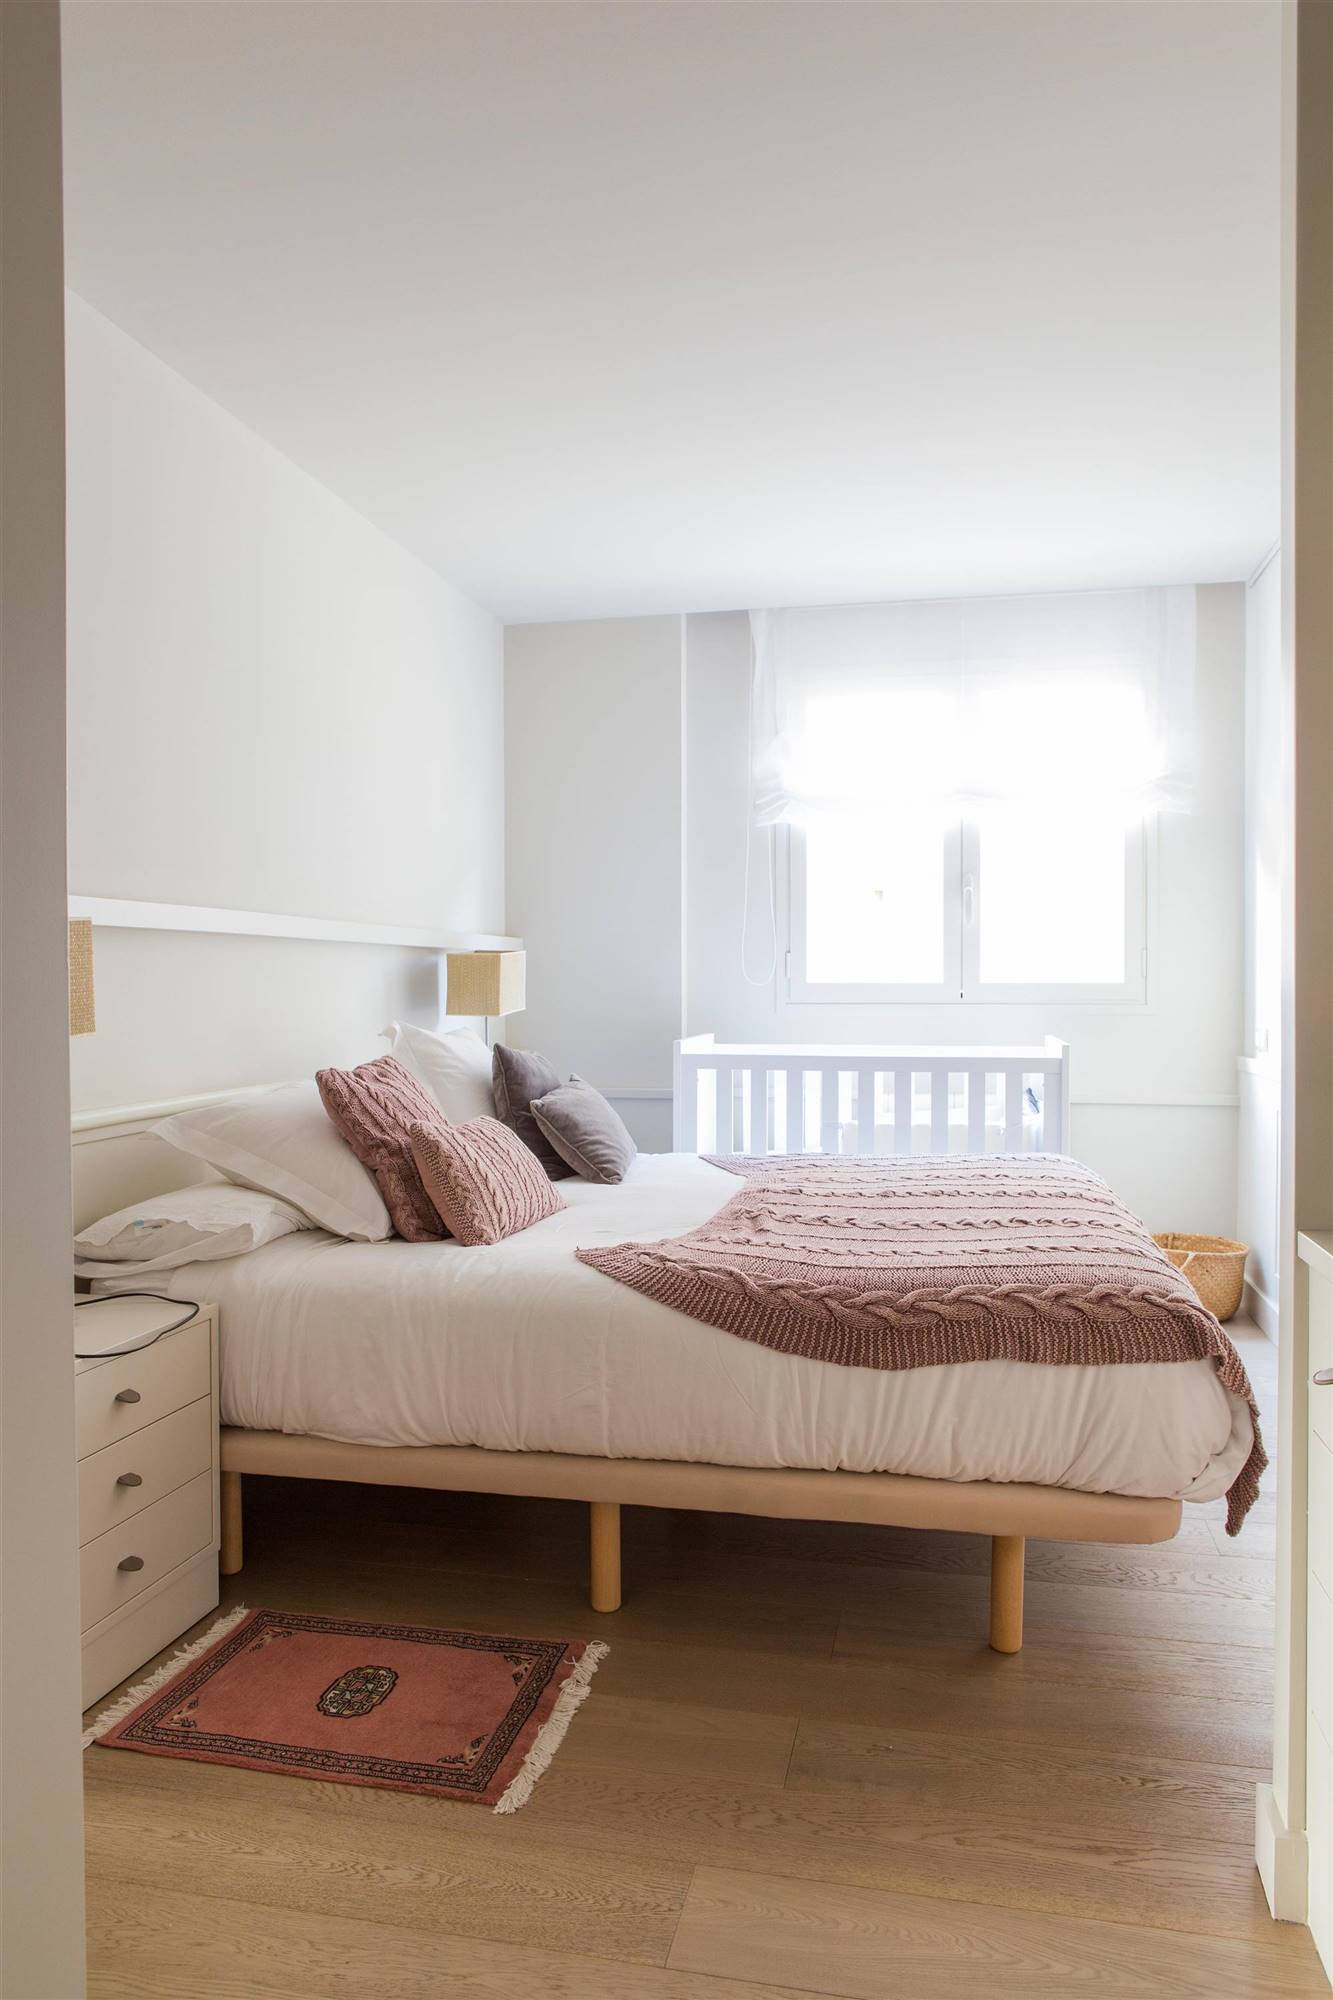 Dormitorio con cama alta y colcha en color rosa empolvado.